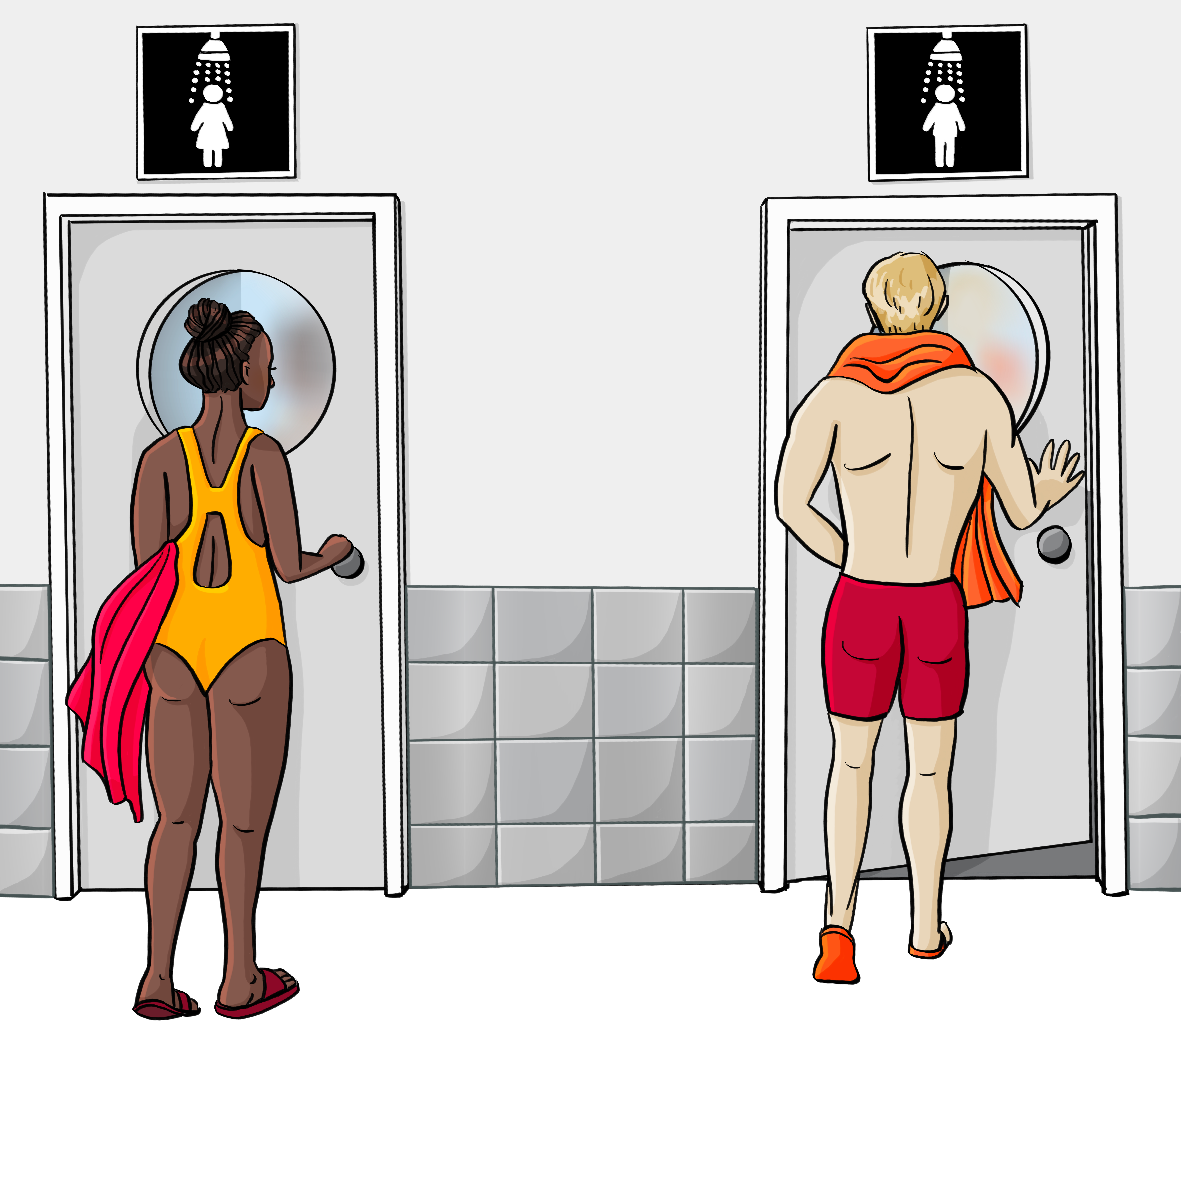 Eine Frau im Badeanzug öffnet eine Tür zu einer Damendusche. Ein Mann in Badehose öffnet die Tür zu einer Herrendusche. 